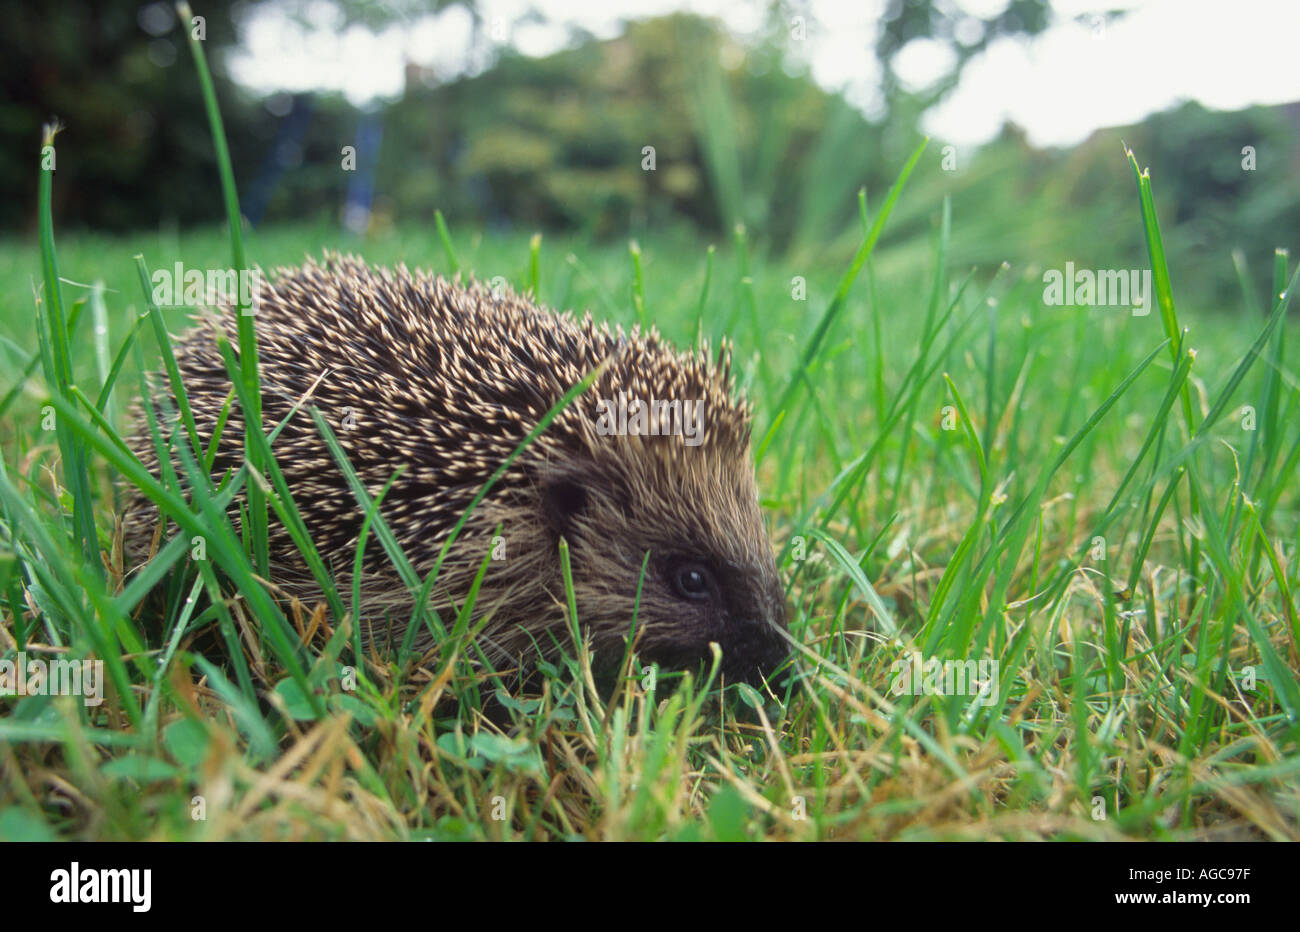 A hedgehog (Erinaceus europaeus) in a suburban garden Teignmouth Devon Great Britain Stock Photo